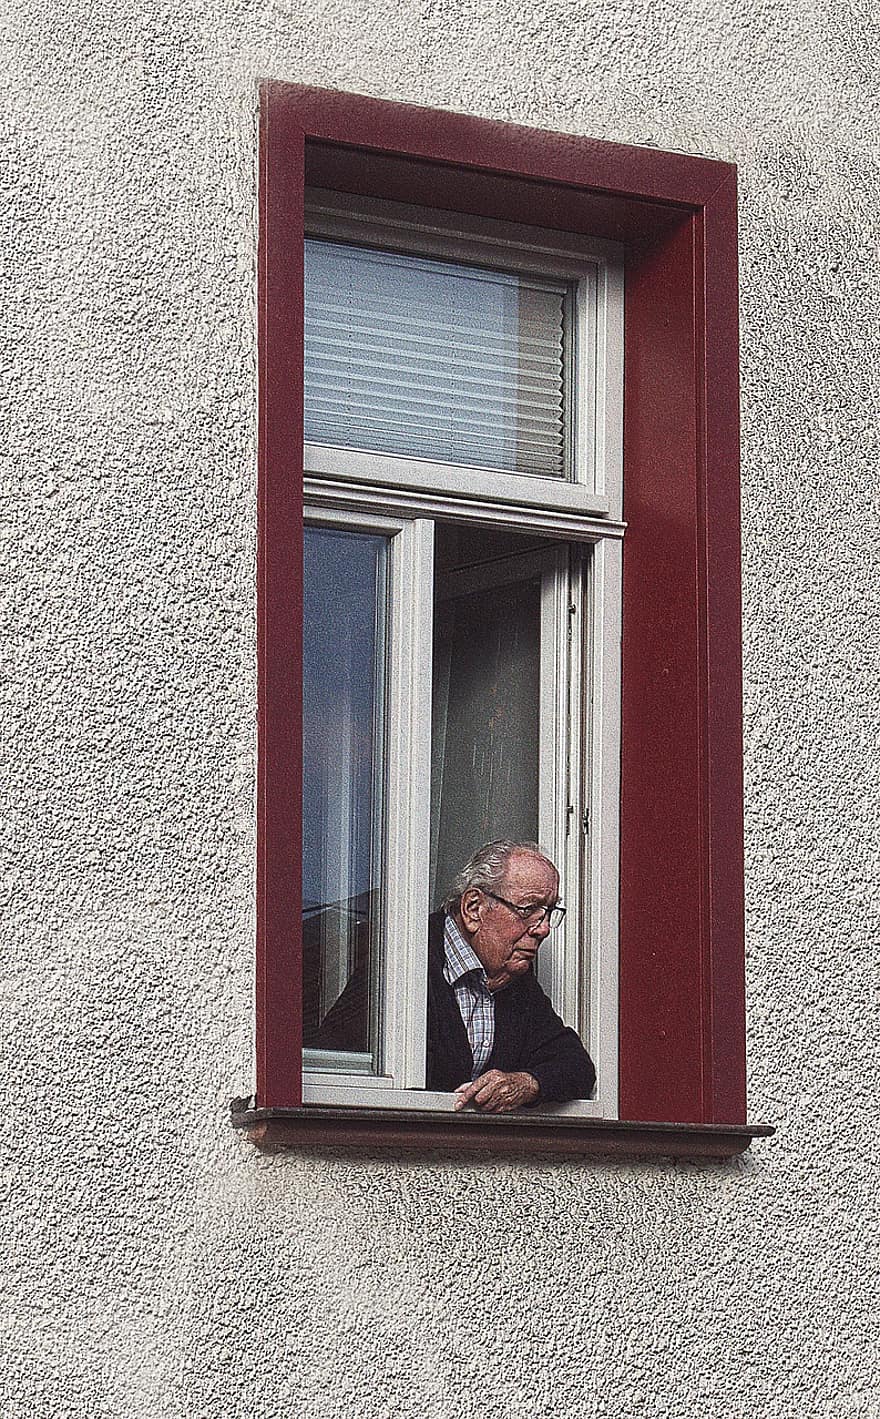 oude man, venster, gebouw, man, senior, ouderen, nieuwsgierig, aan het kijken, appartement, stedelijk